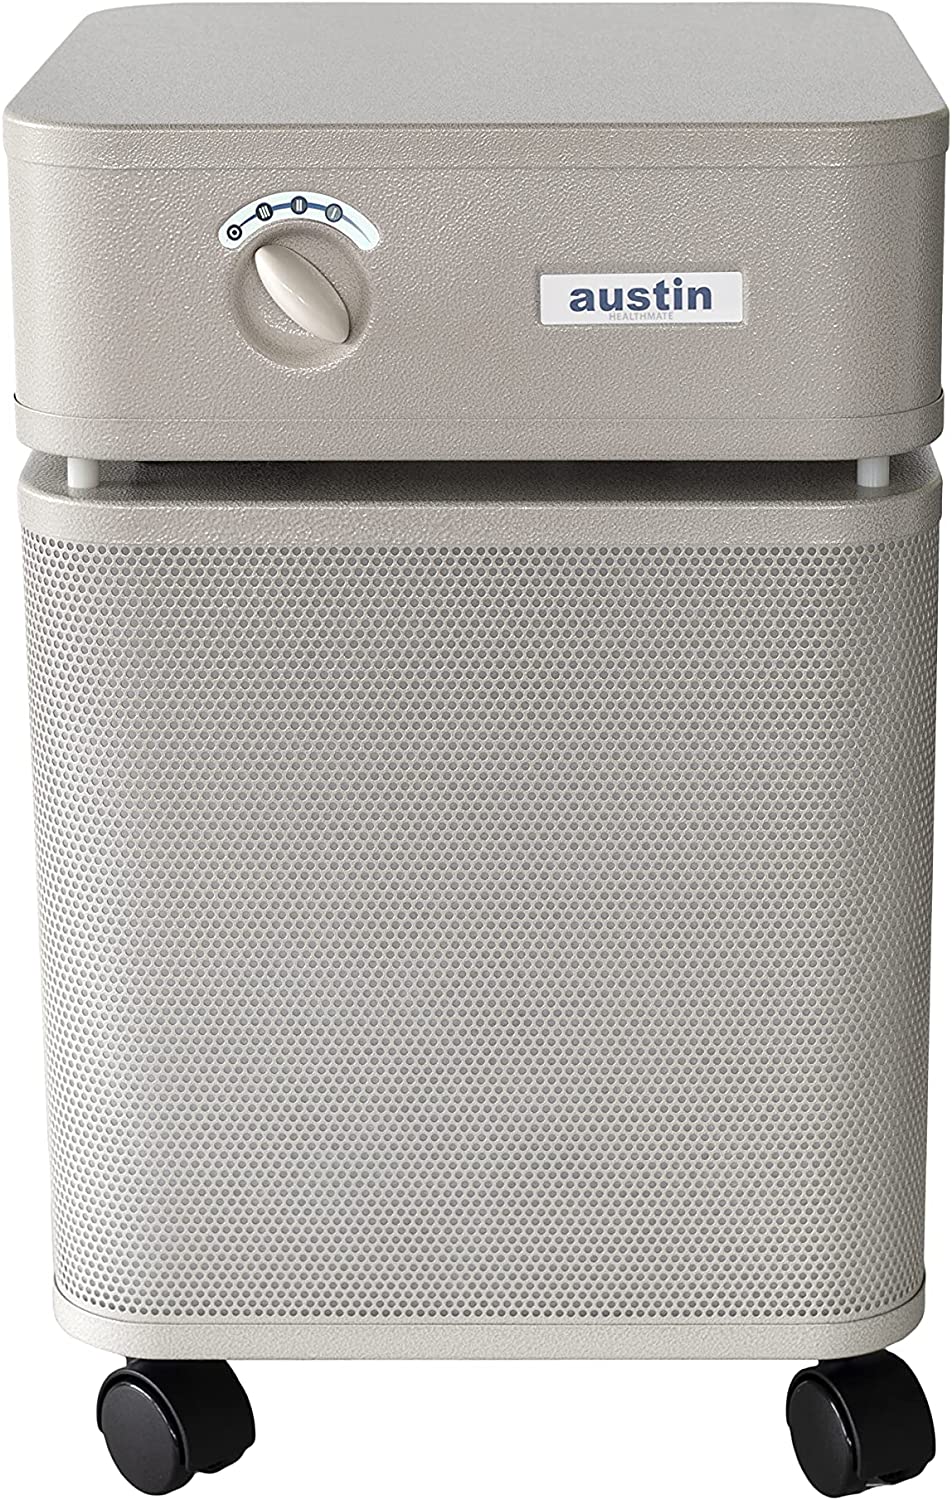 Austin Air Healthmate Wheeze Reducing Air Purifier